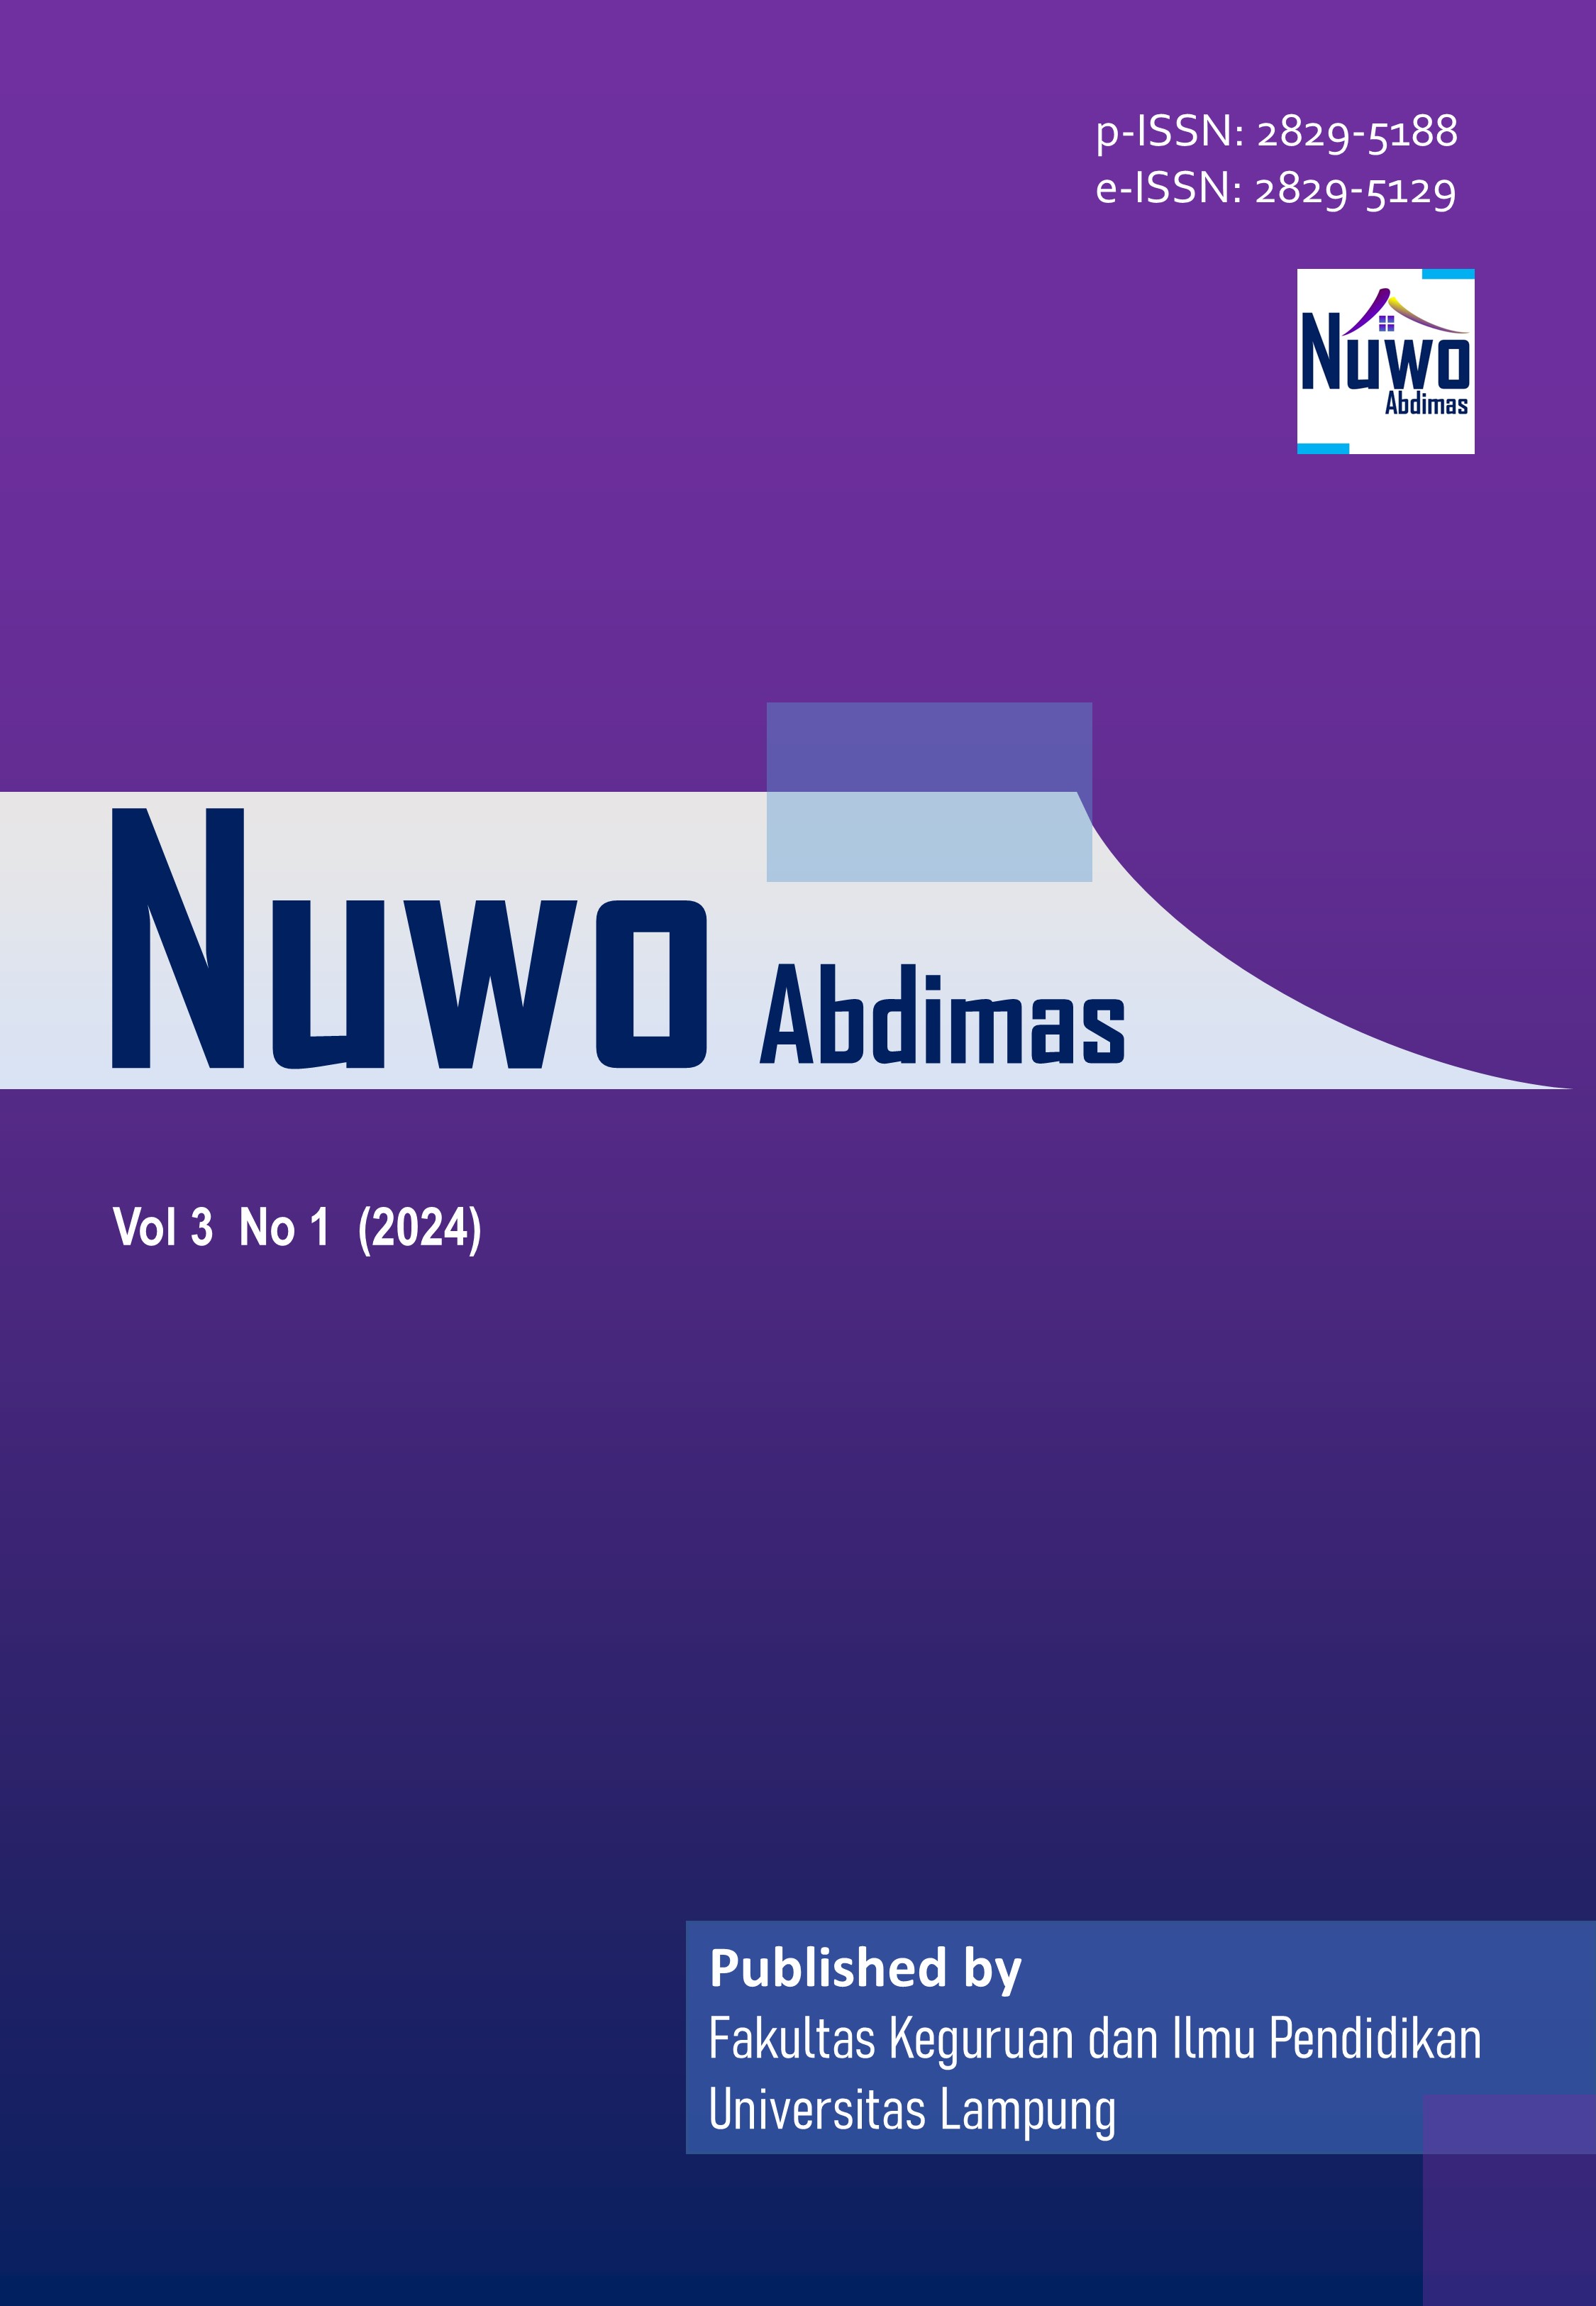 					View Vol. 3 No. 1 (2024): Nuwo Abdimas
				